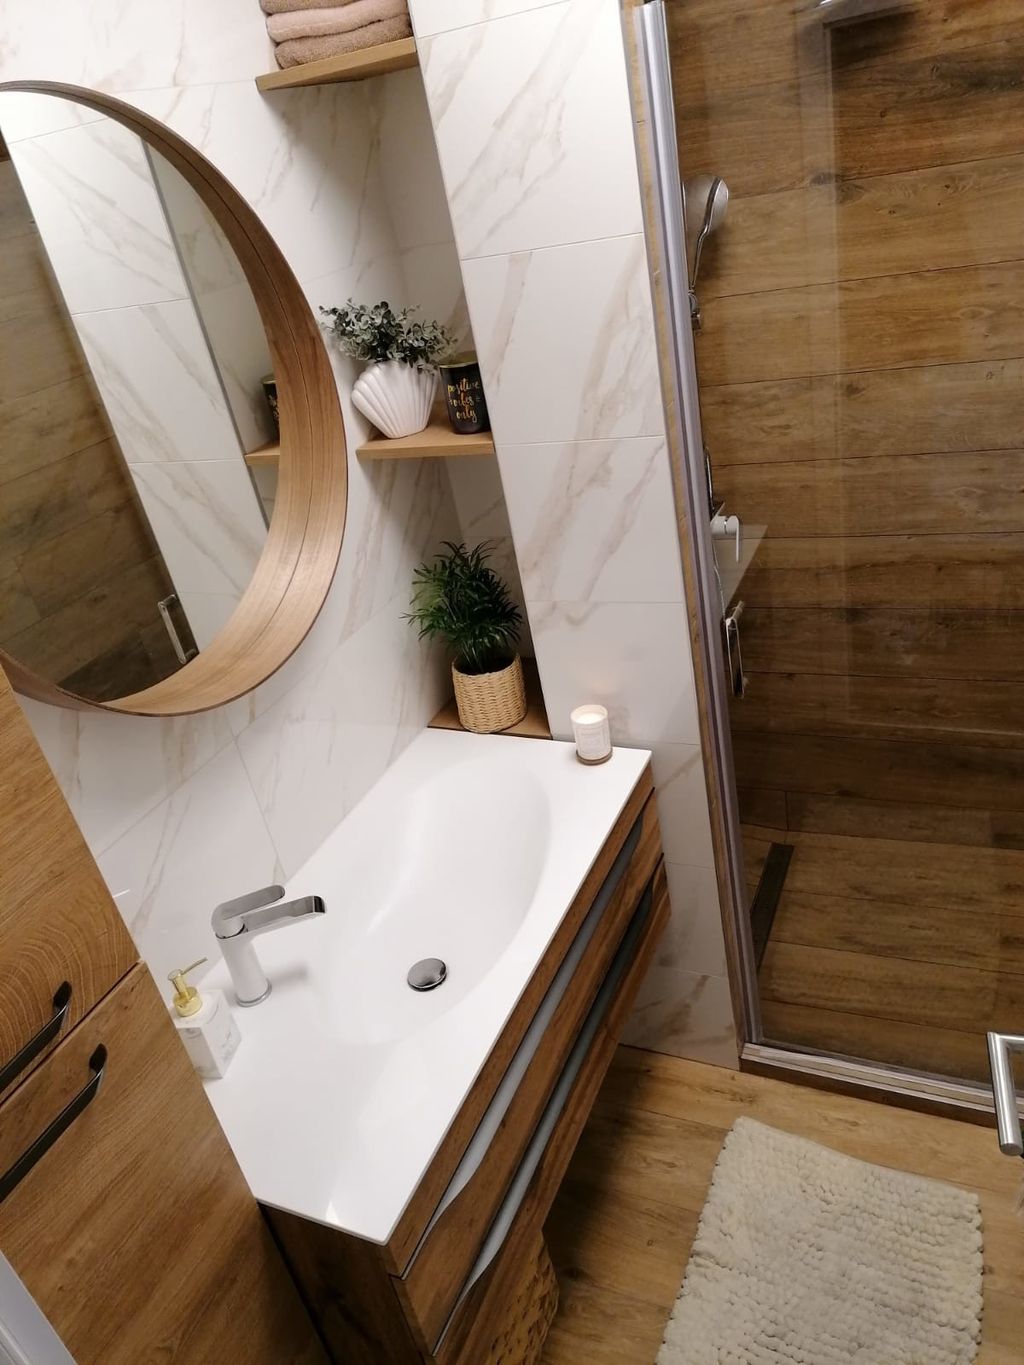 Petra Tarodi iz Varaždina preuredila je svoj stan, a najdraža prostorija joj je nova kupaonica - 10